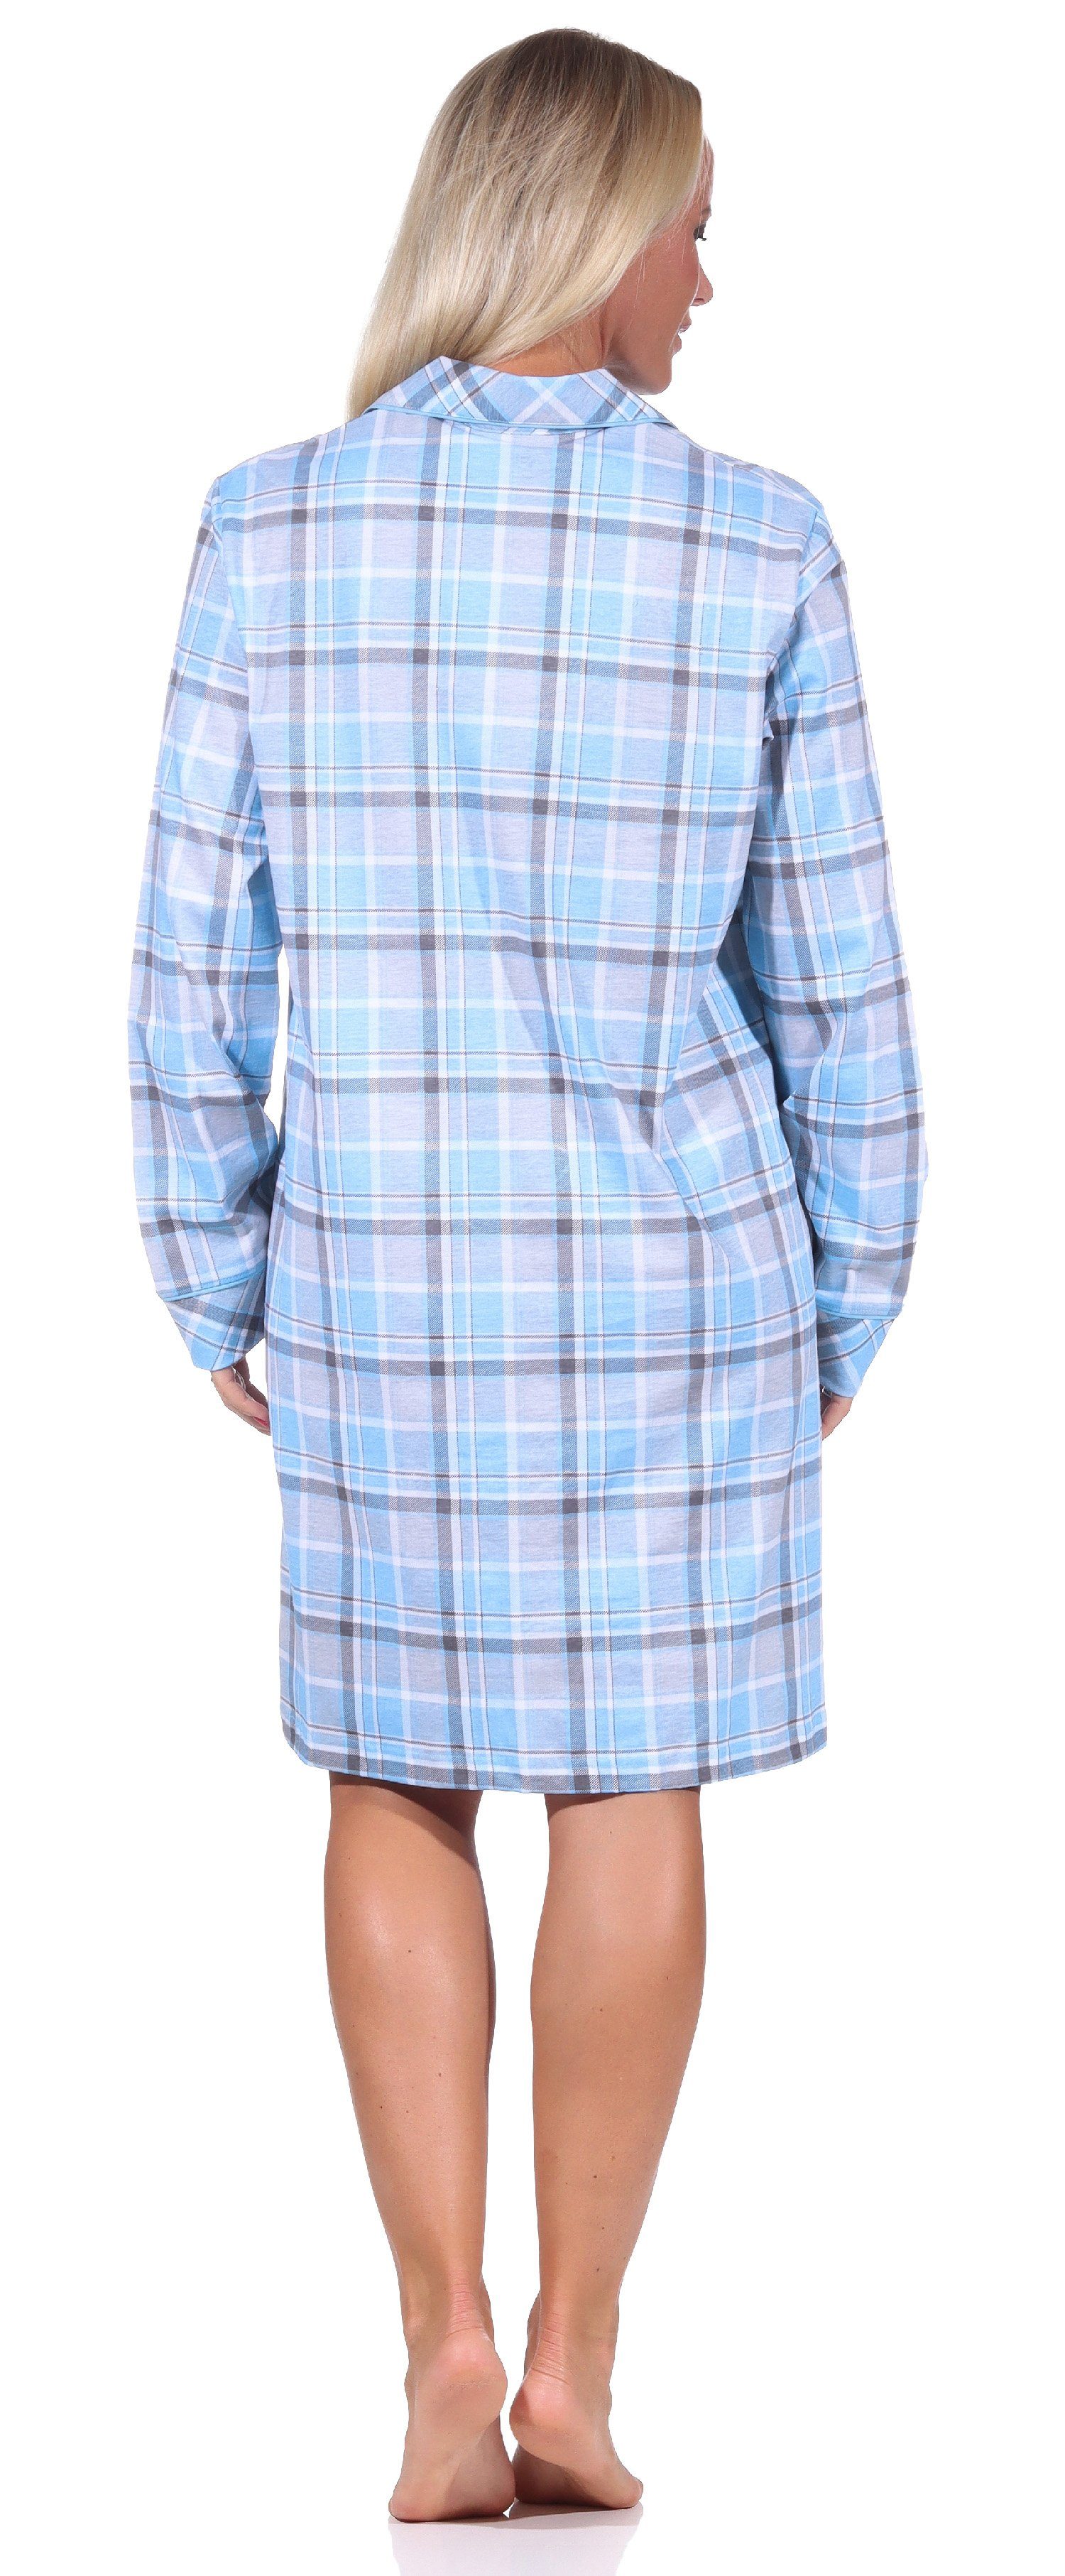 Qualität knöpfen Nachthemd Normann in Karopotik Jersey langarm hellblau Nachthemd zum Damen in